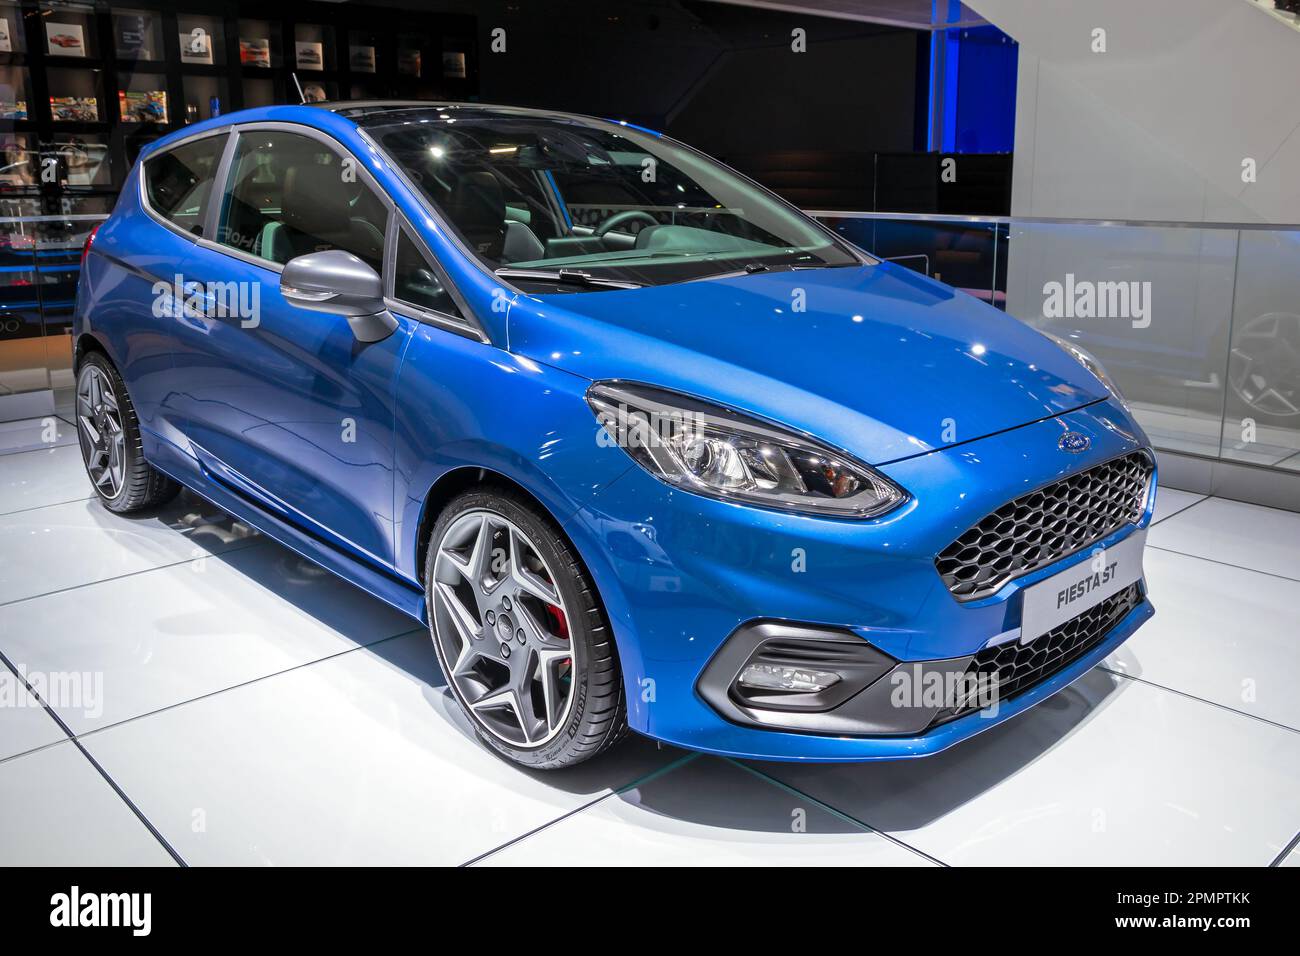 Ford Fiesta ST au salon de l'automobile IAA de Francfort. Allemagne - 12 septembre 2017. Banque D'Images